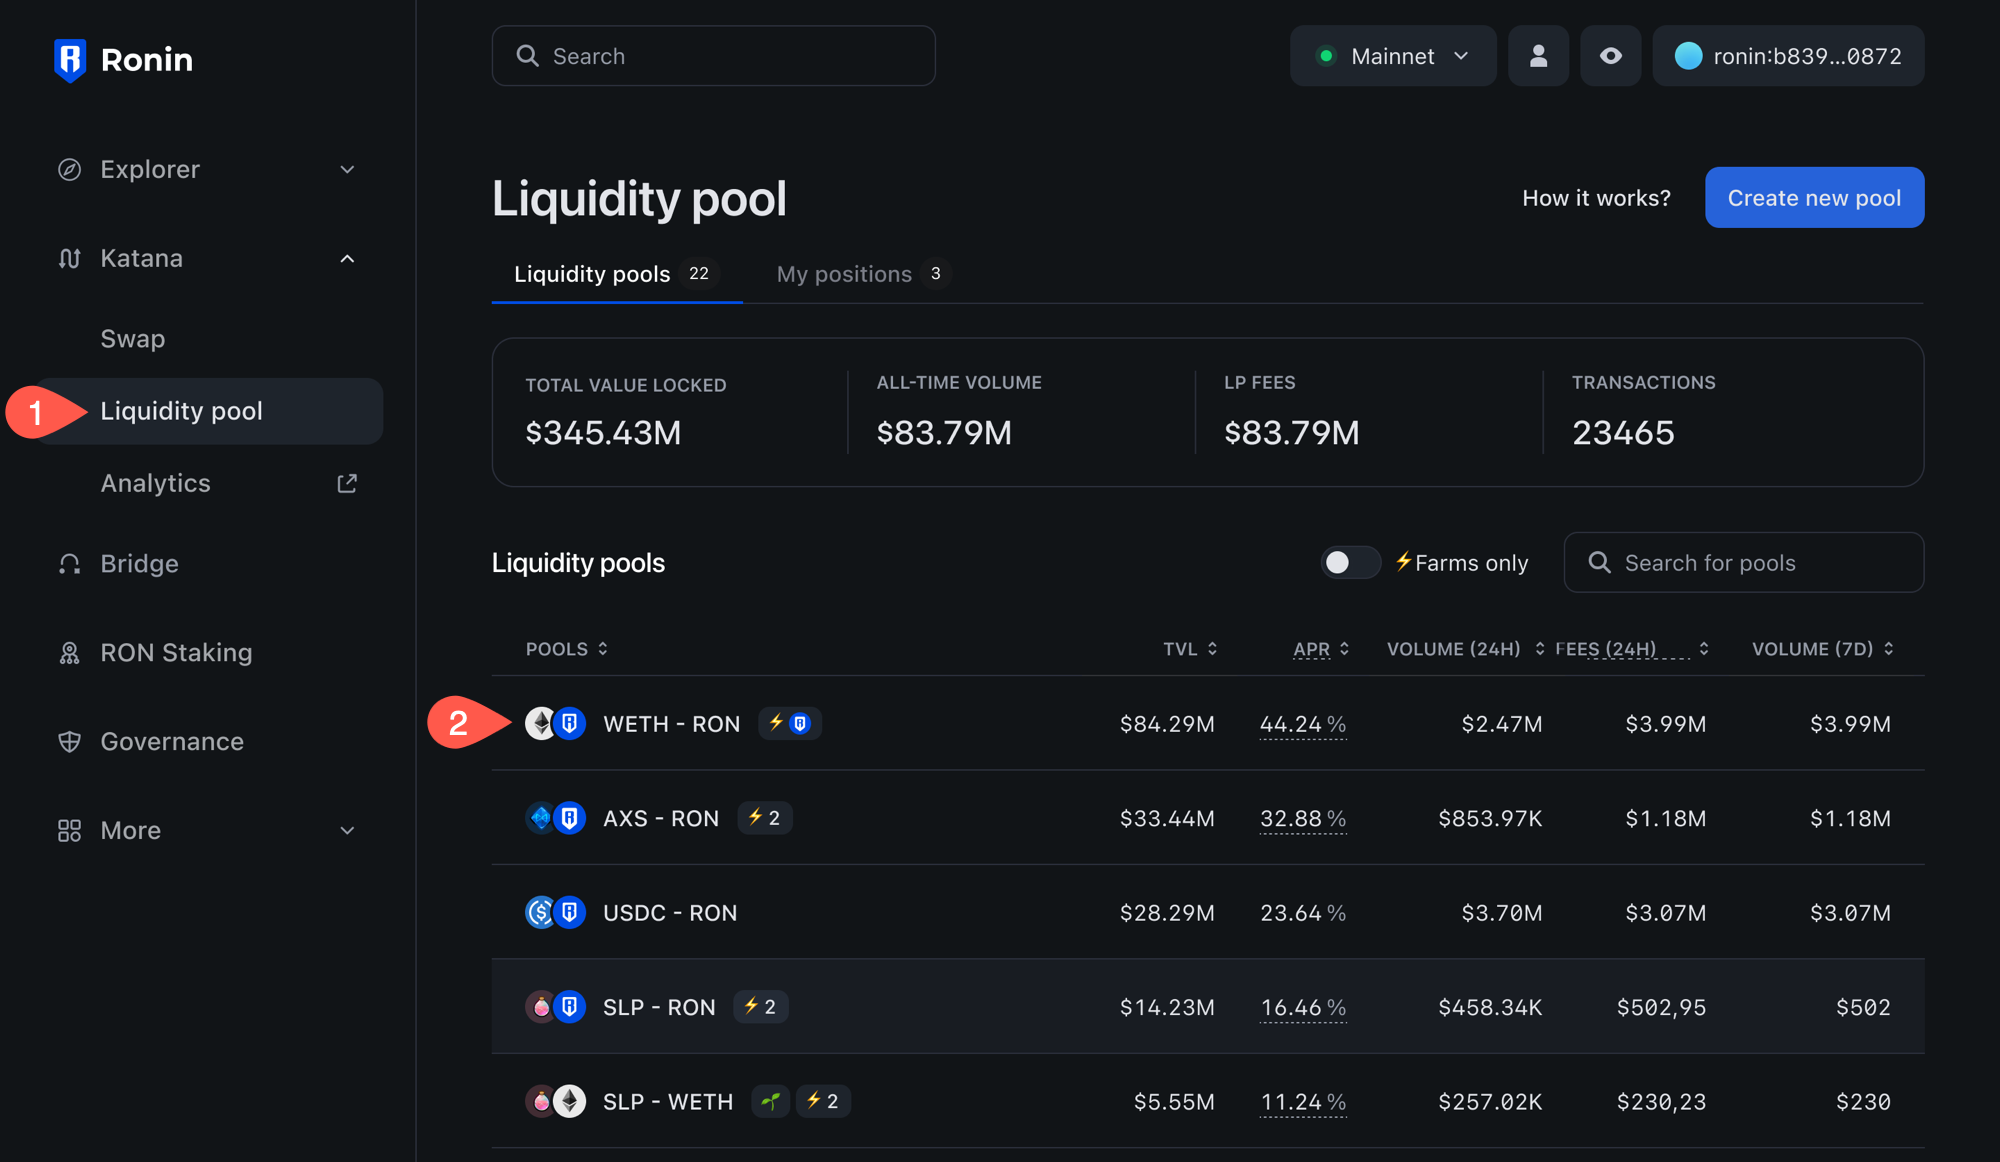 Liquidity pool